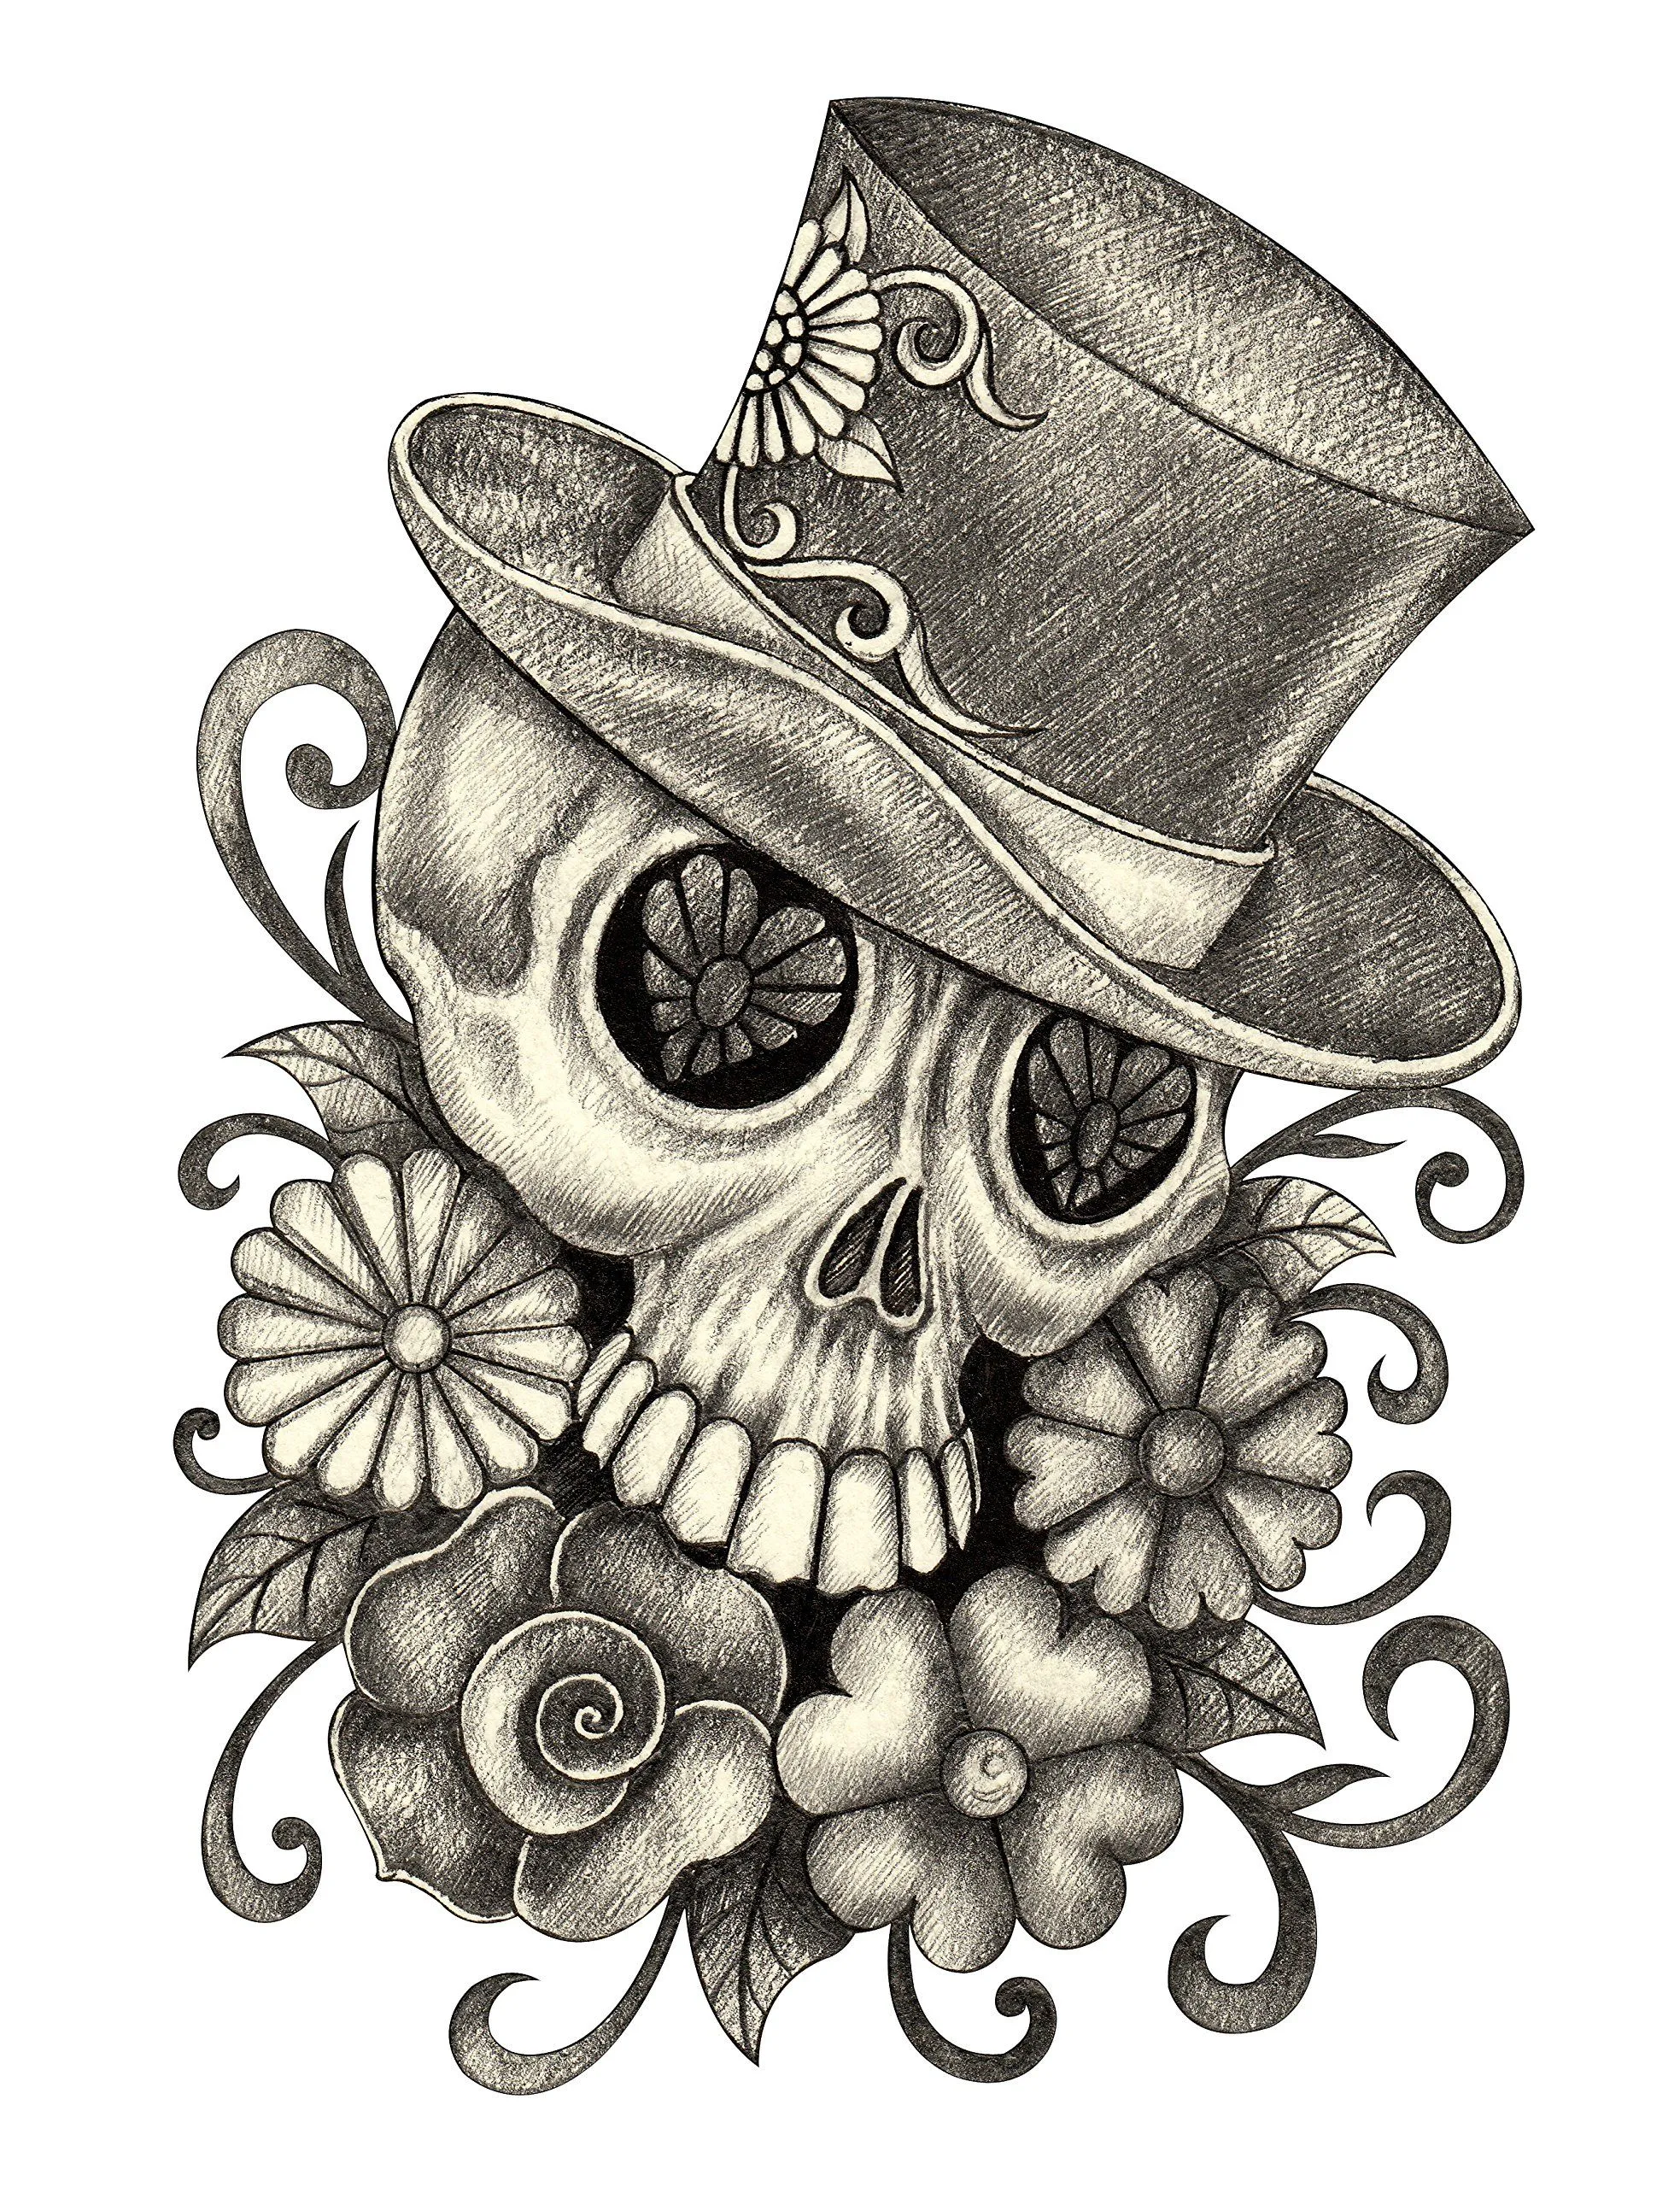 Amazon.com: Lápiz Sketch Floral Dia de los muertos cráneo con sombrero # 5  vinilo calcomanía : Automotriz